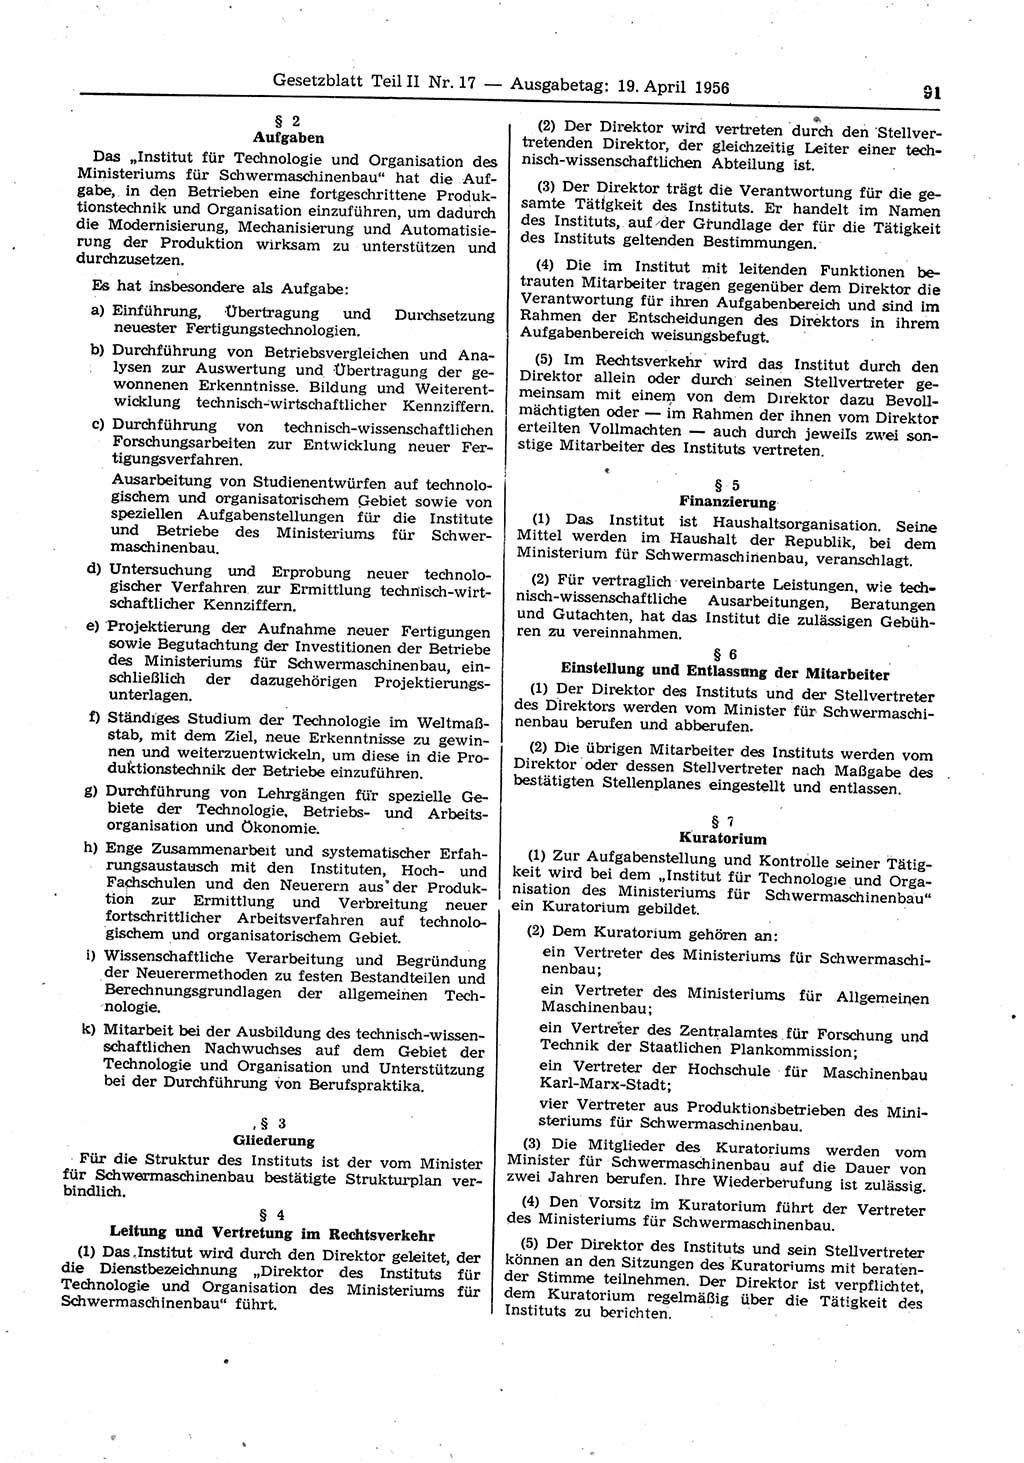 Gesetzblatt (GBl.) der Deutschen Demokratischen Republik (DDR) Teil ⅠⅠ 1956, Seite 91 (GBl. DDR ⅠⅠ 1956, S. 91)